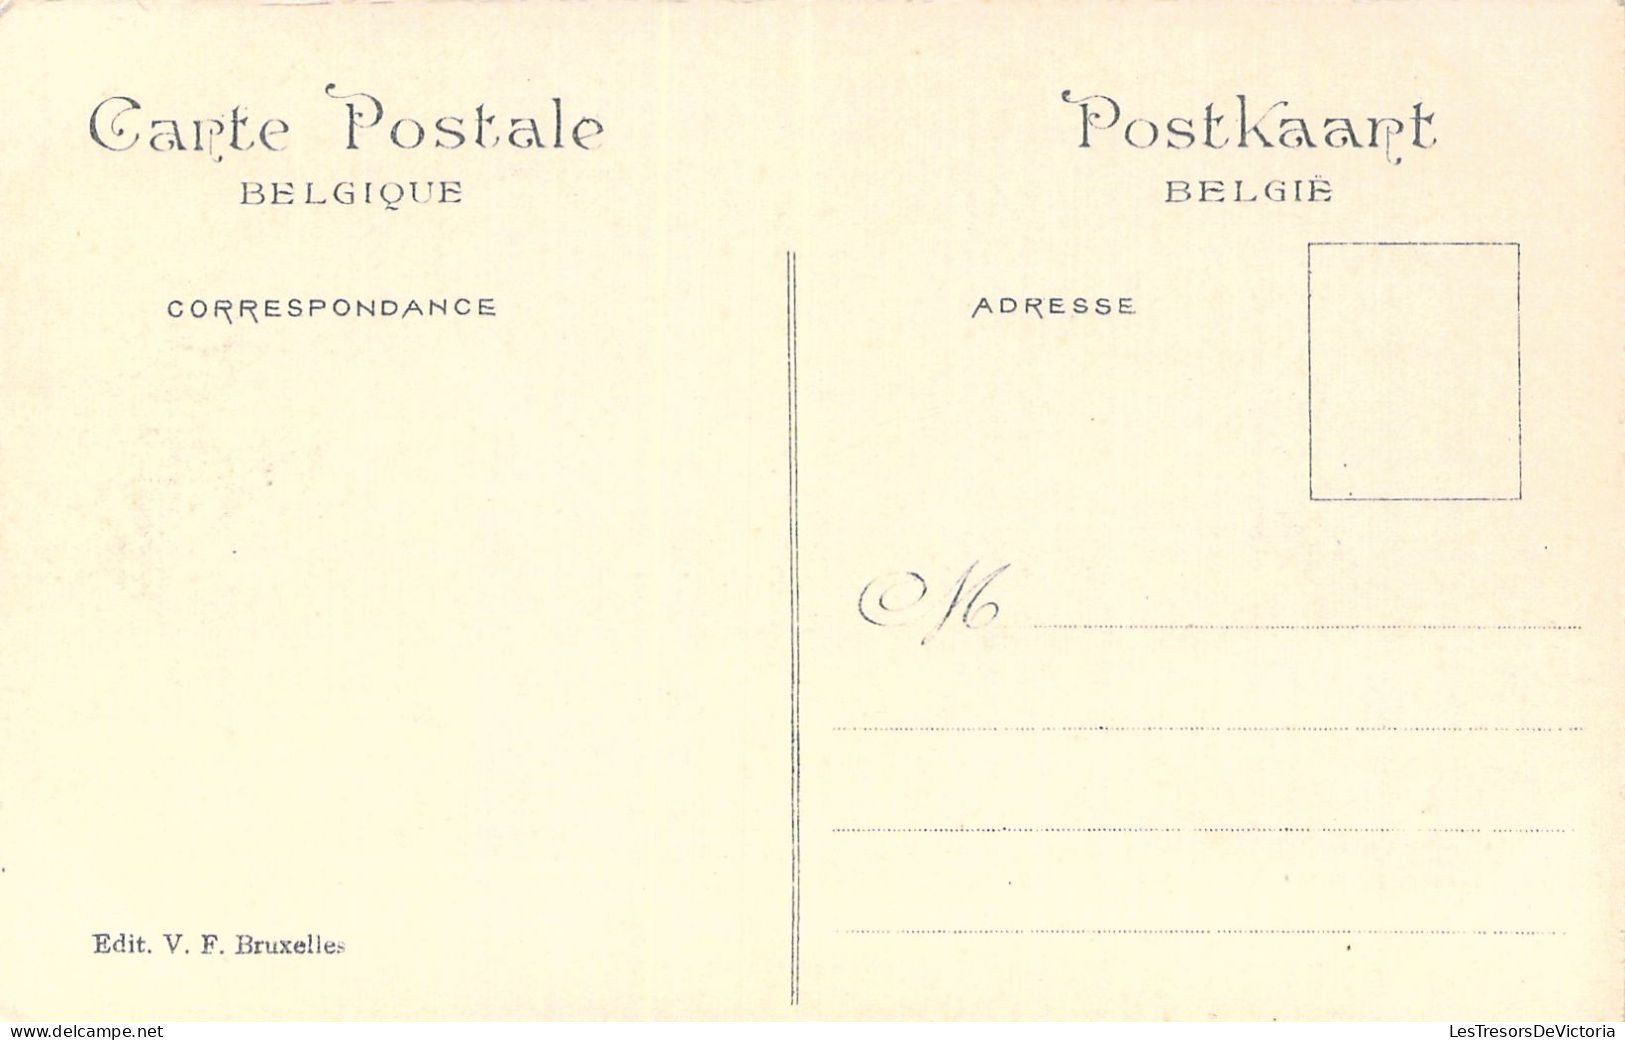 BELGIQUE - BRUXELLES - EXPOSITION UNIVERSELLE 1910 - Royaume Merveilleux - Carte Postale Ancienne - Expositions Universelles